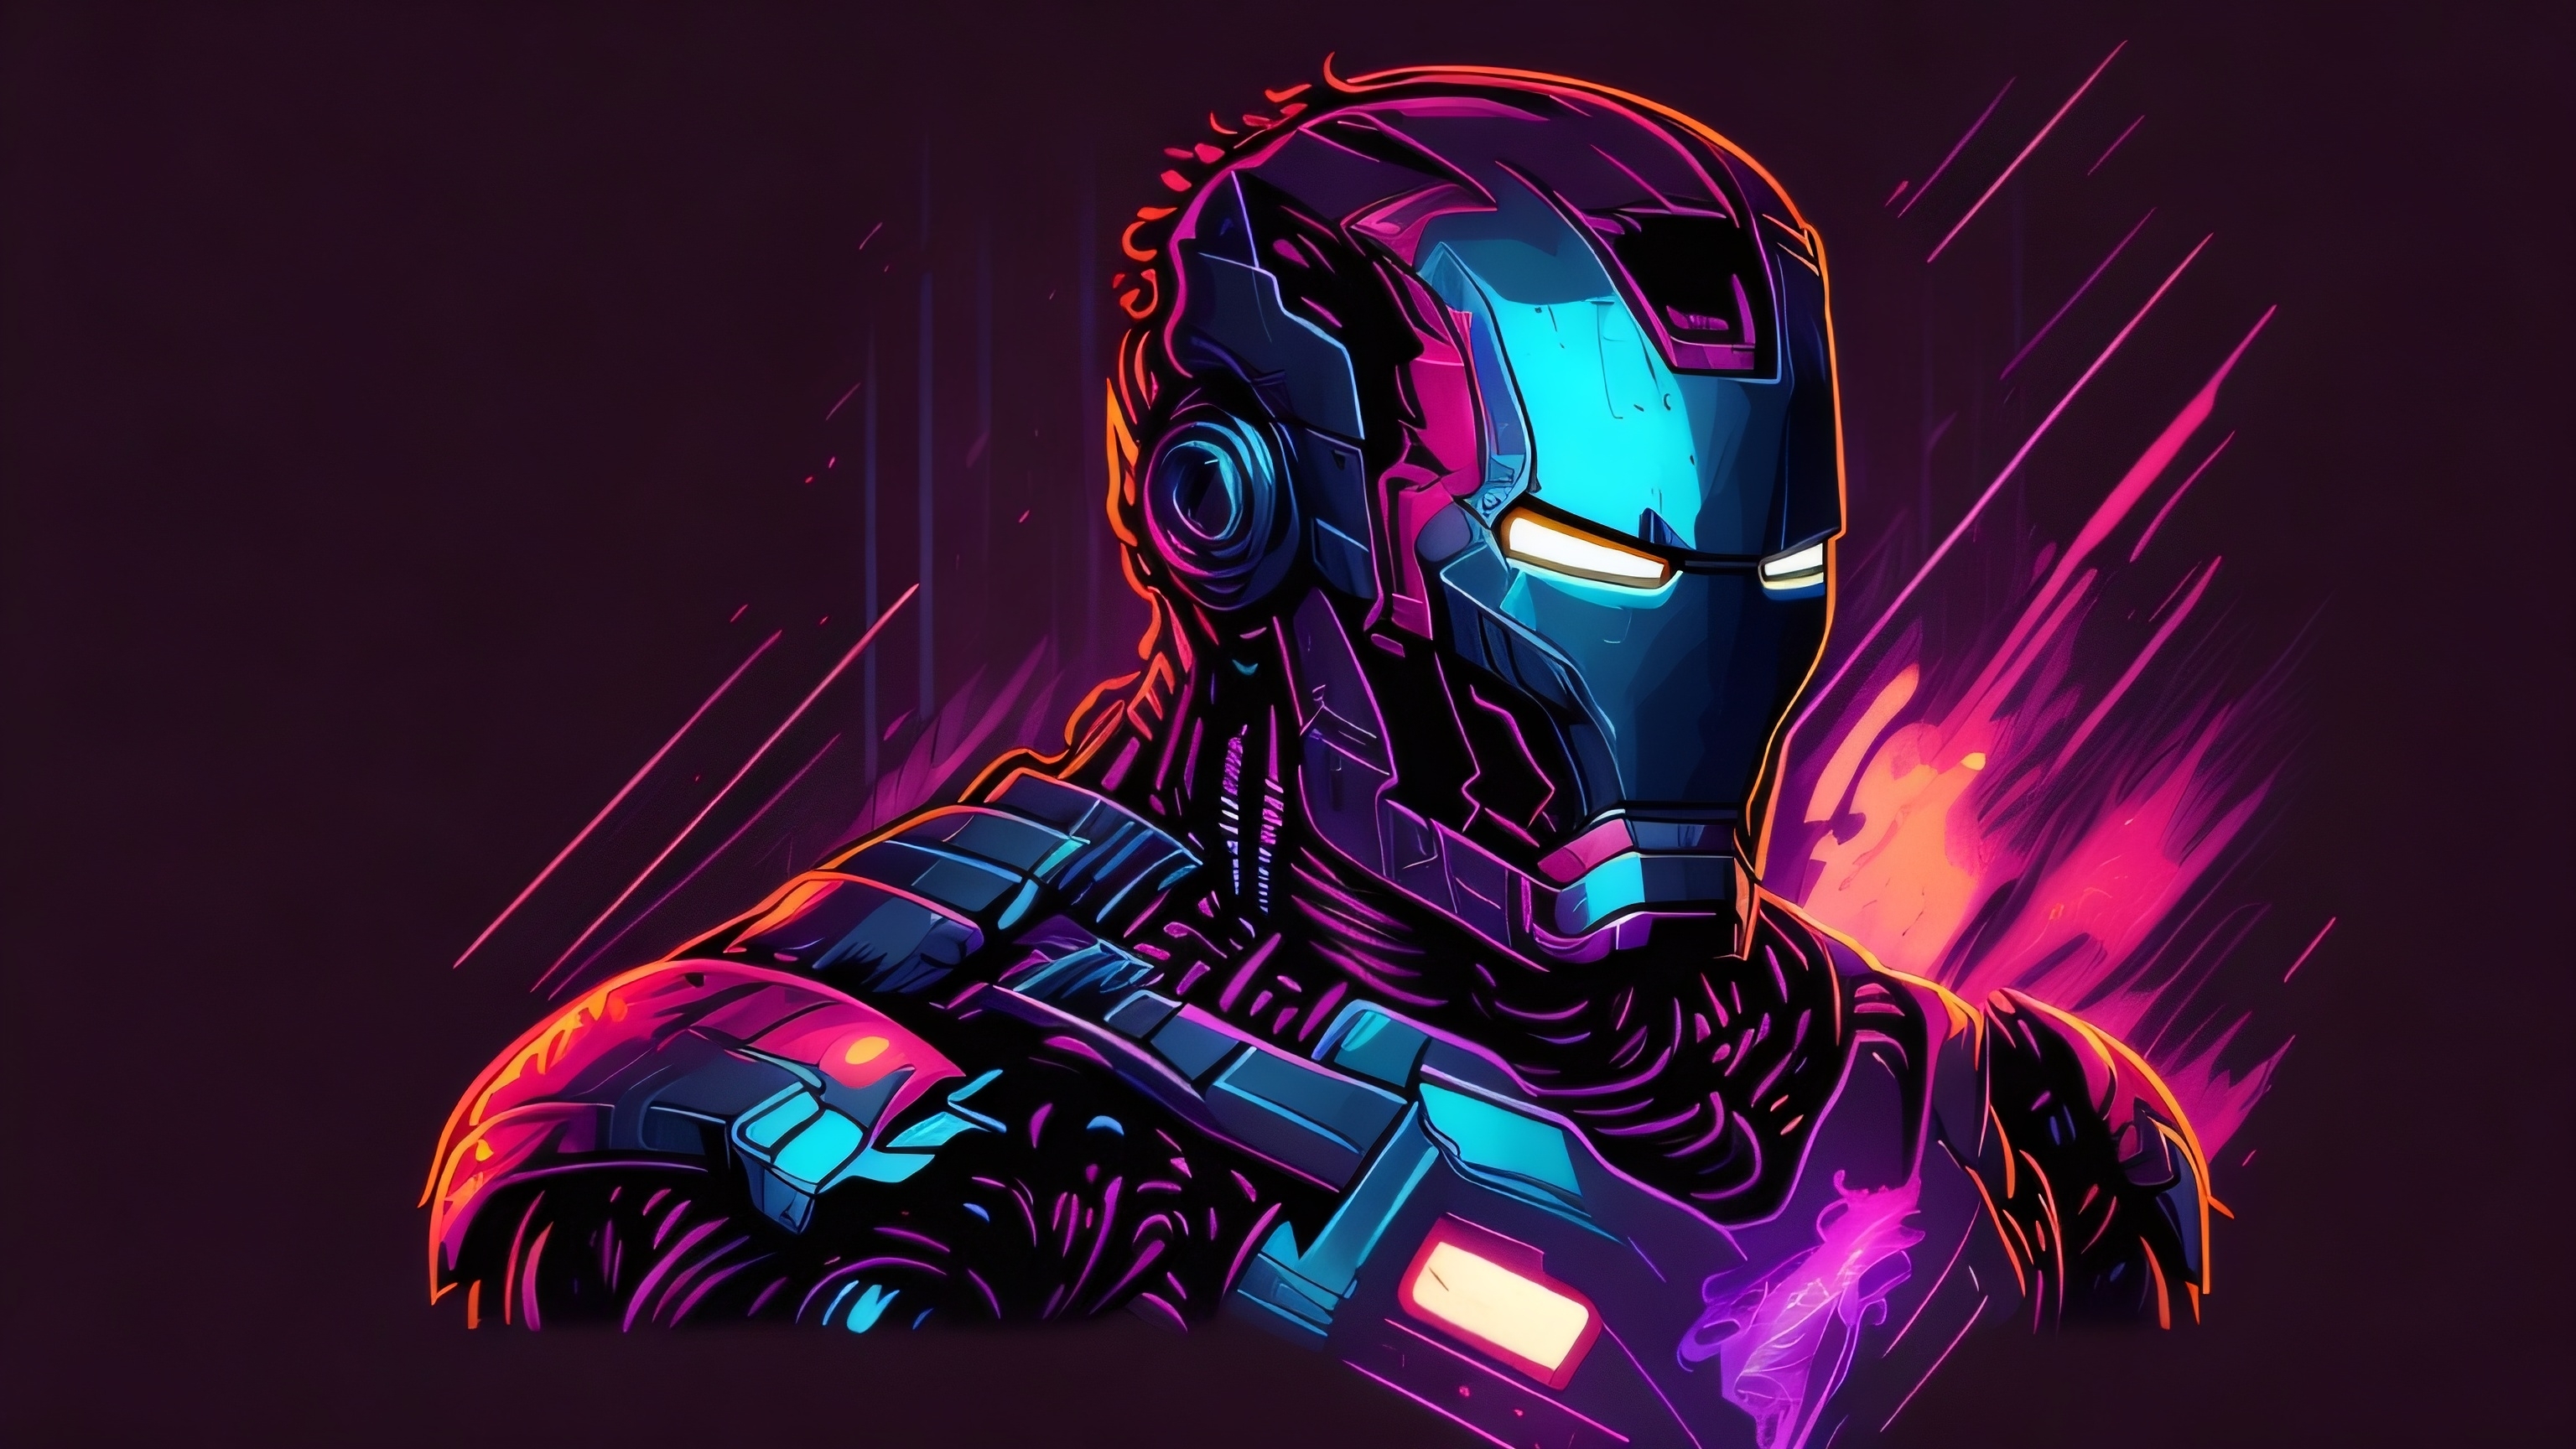 Iron-Man-glowing- Live -Wallpaper by linkvegas12 on DeviantArt